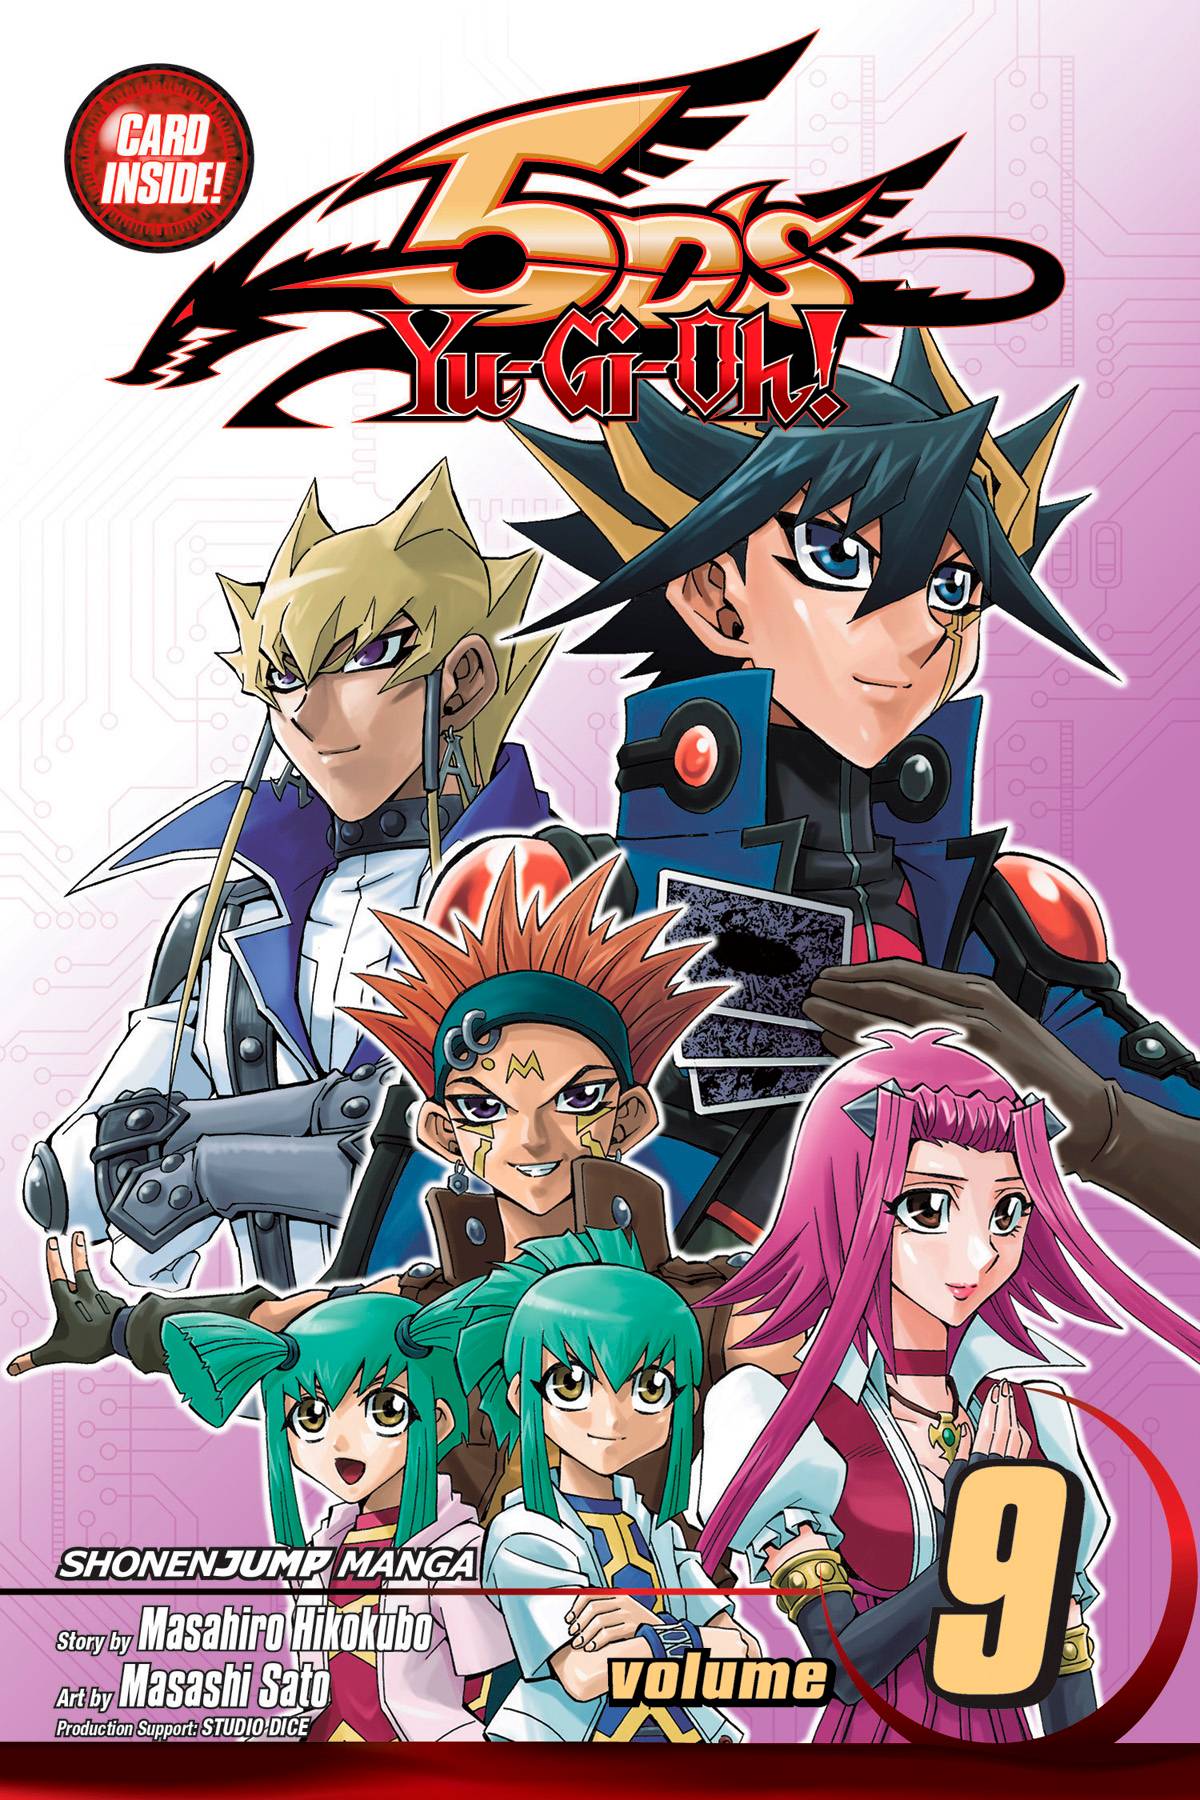 Yu-Gi-Oh! 5ds Manga Volume 9